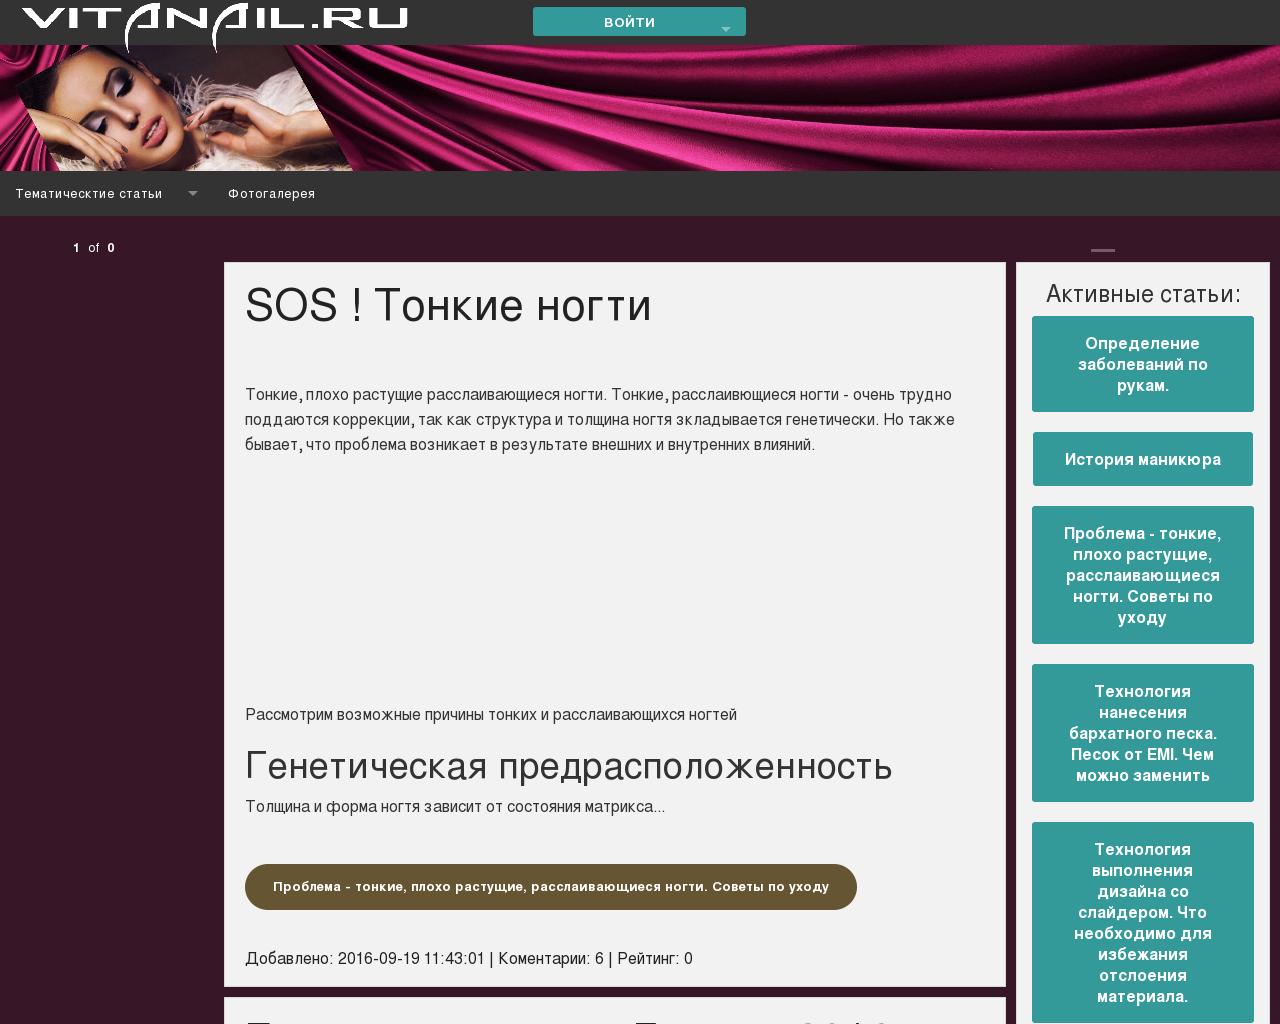 Изображение сайта vitanail.ru в разрешении 1280x1024